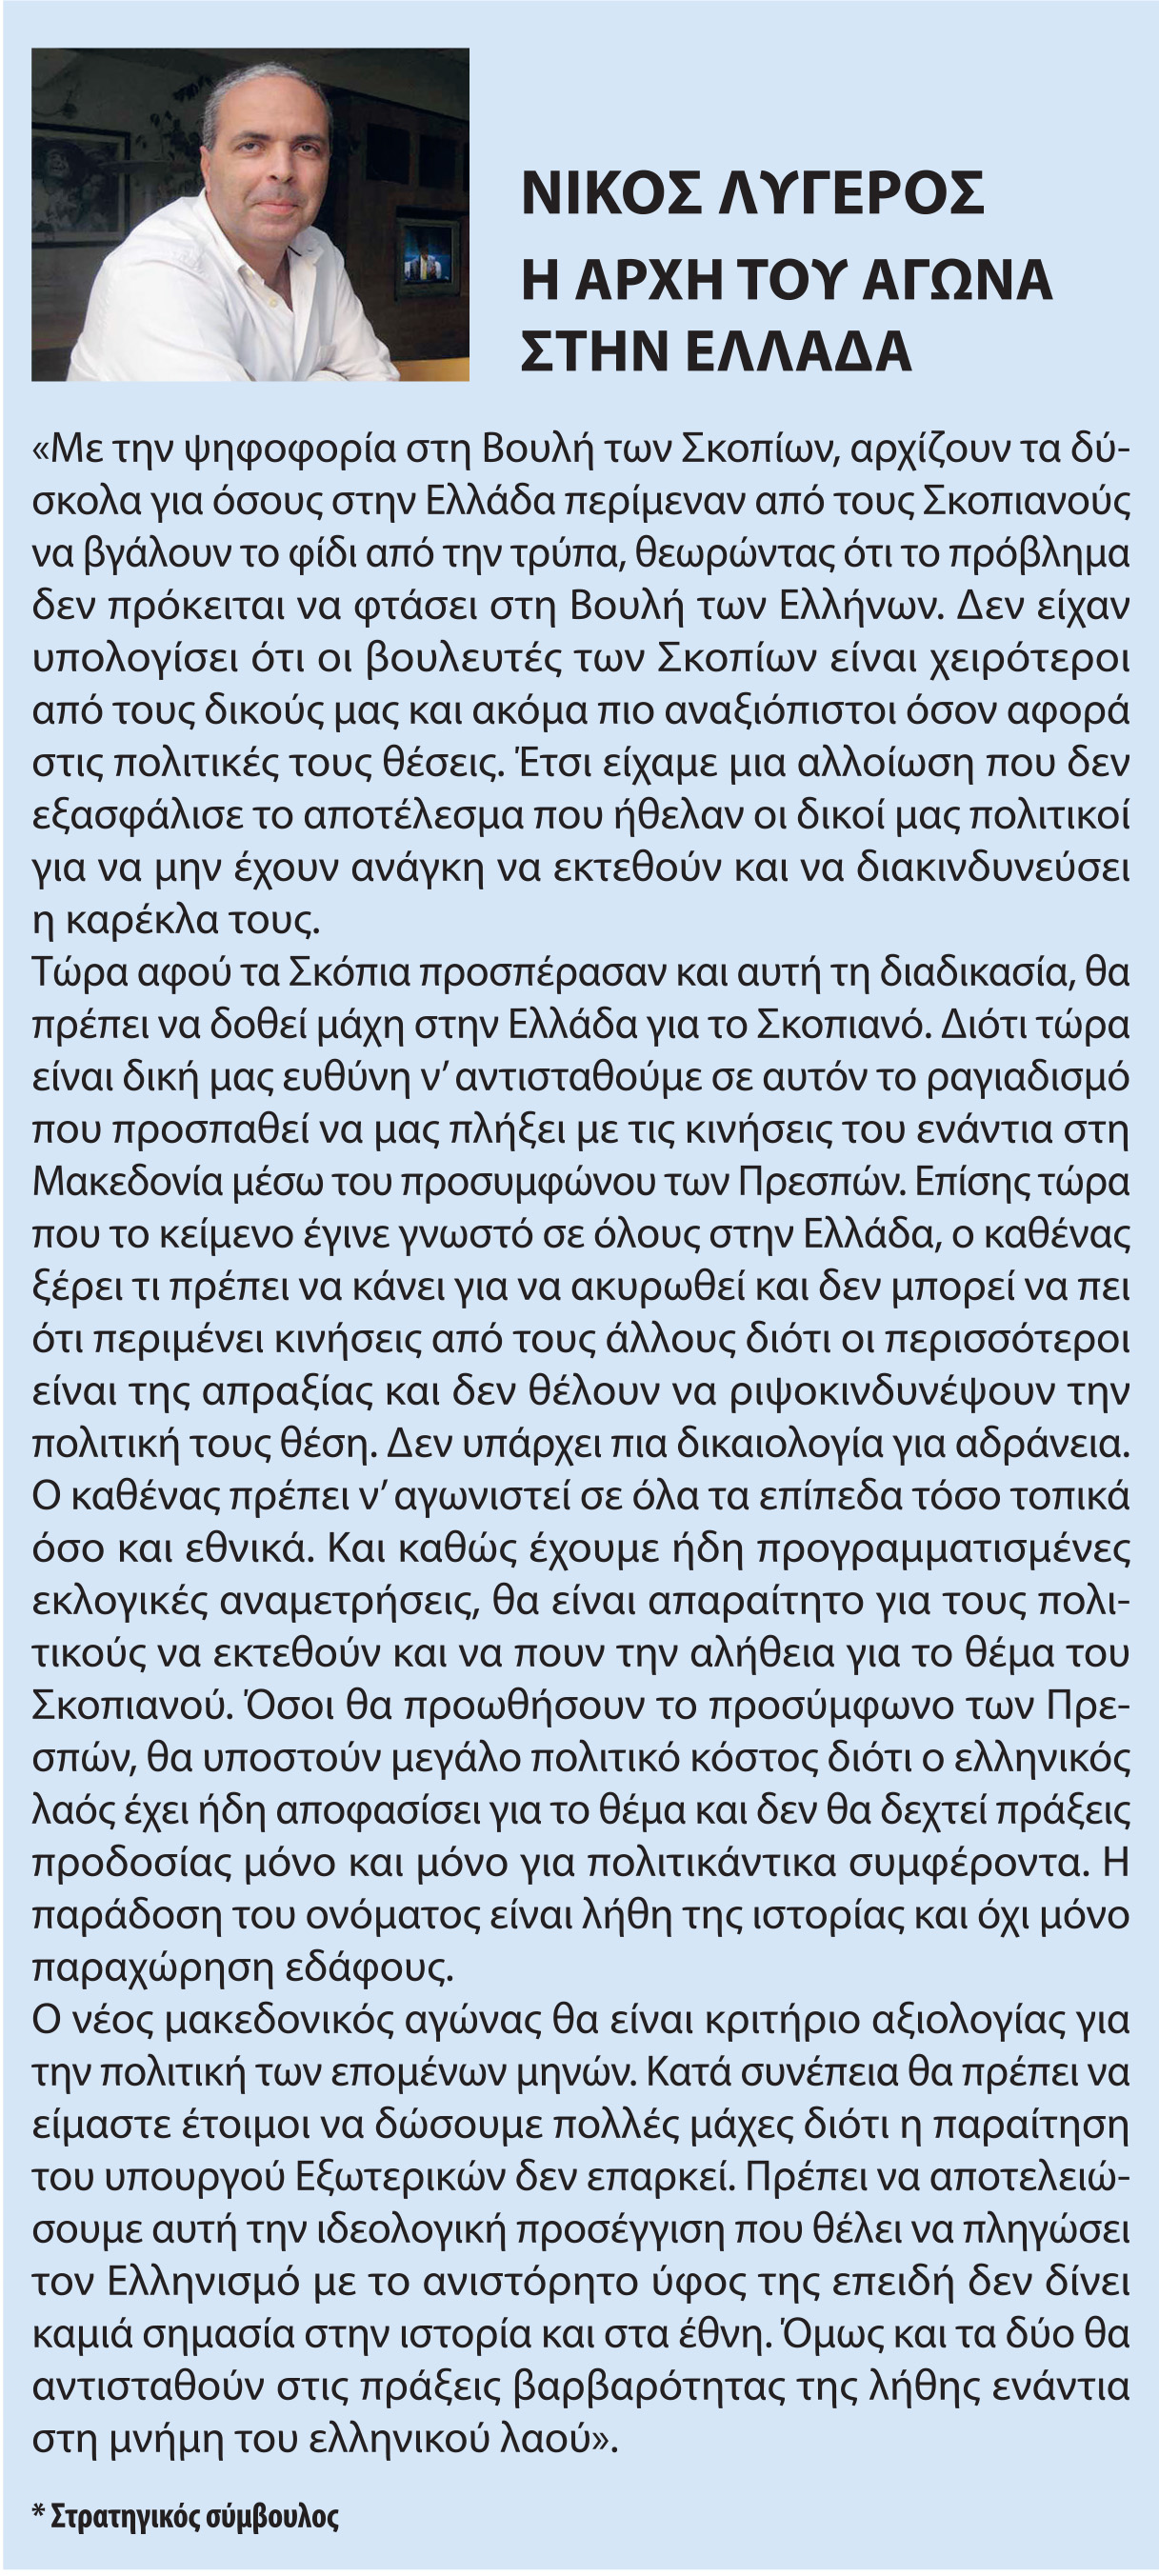 Η αρχή του αγώνα στην Ελλάδα, politikgr press, 26/10/2018 - Publication